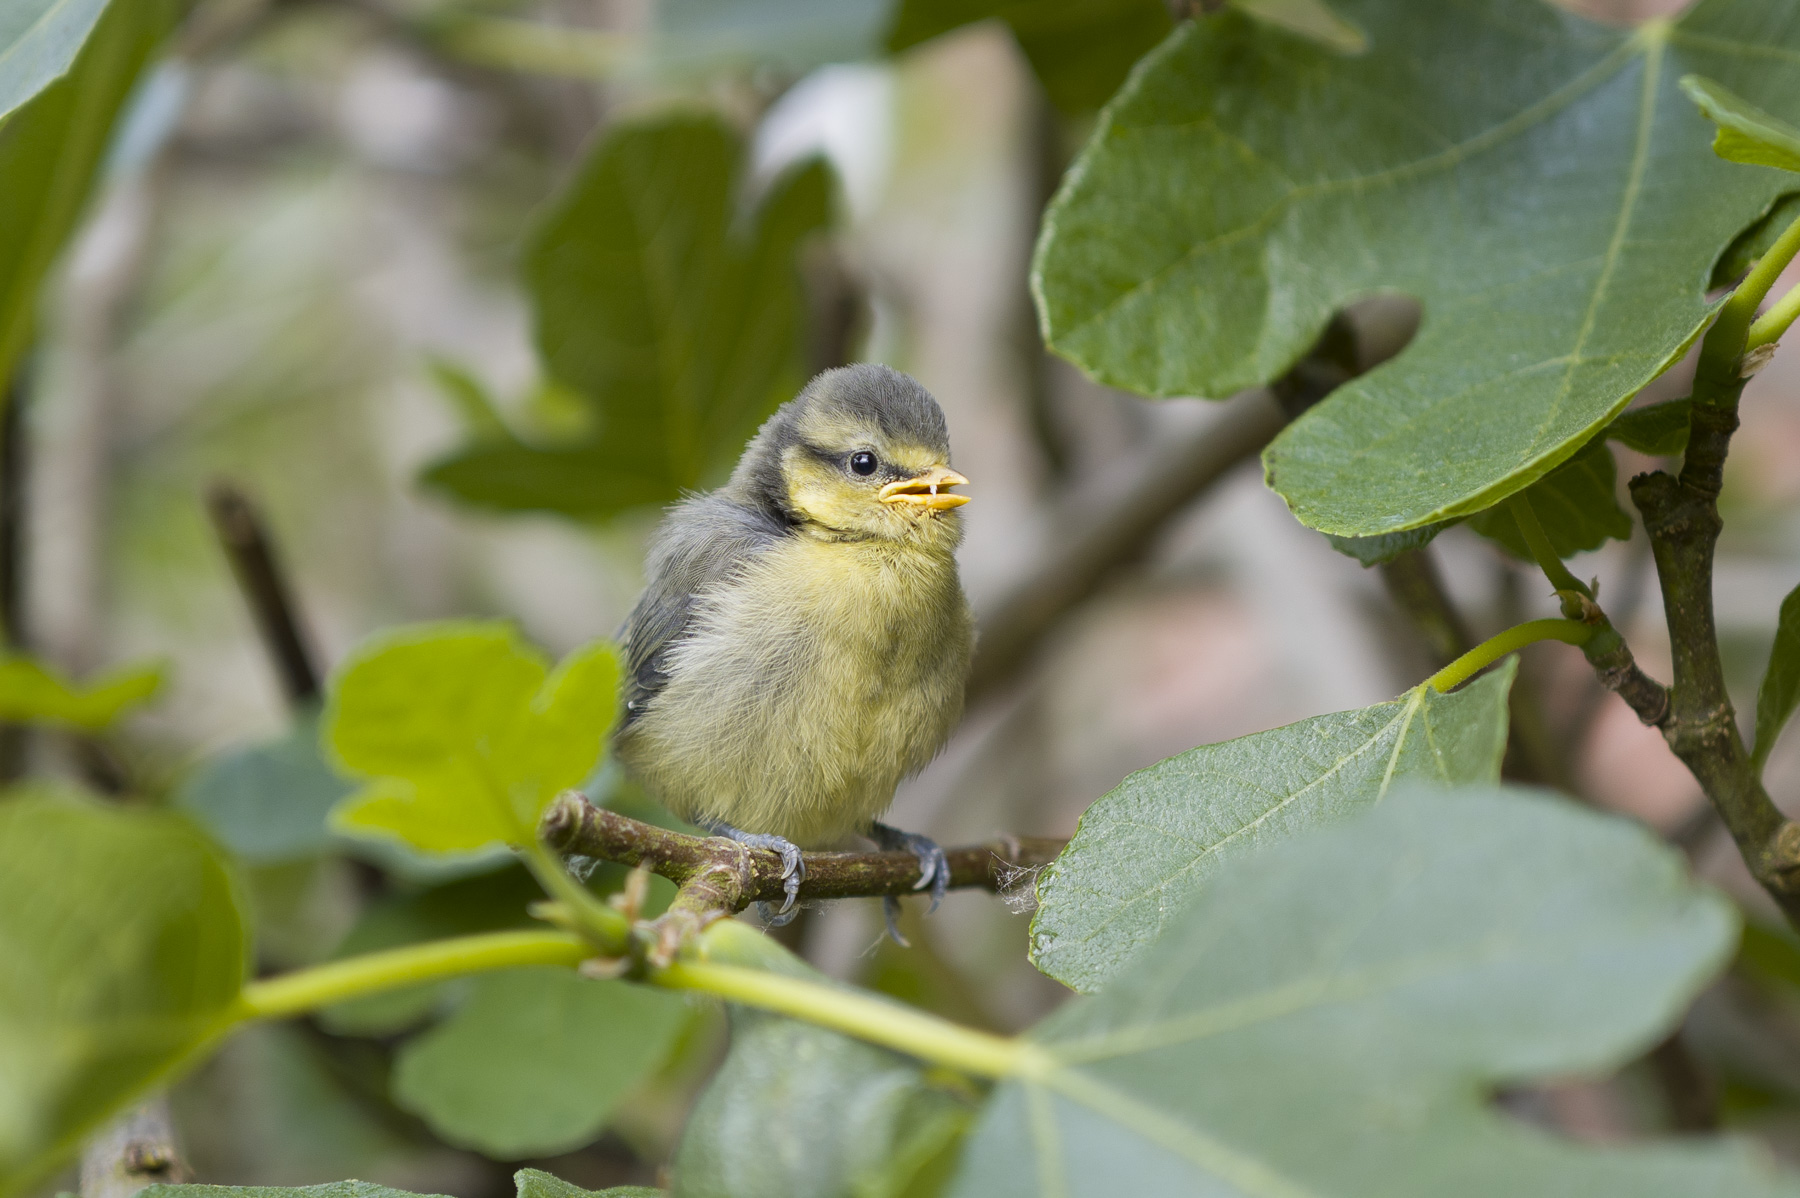 Garden bird wildlife photo using the Leica Q3's 90mm digital crop